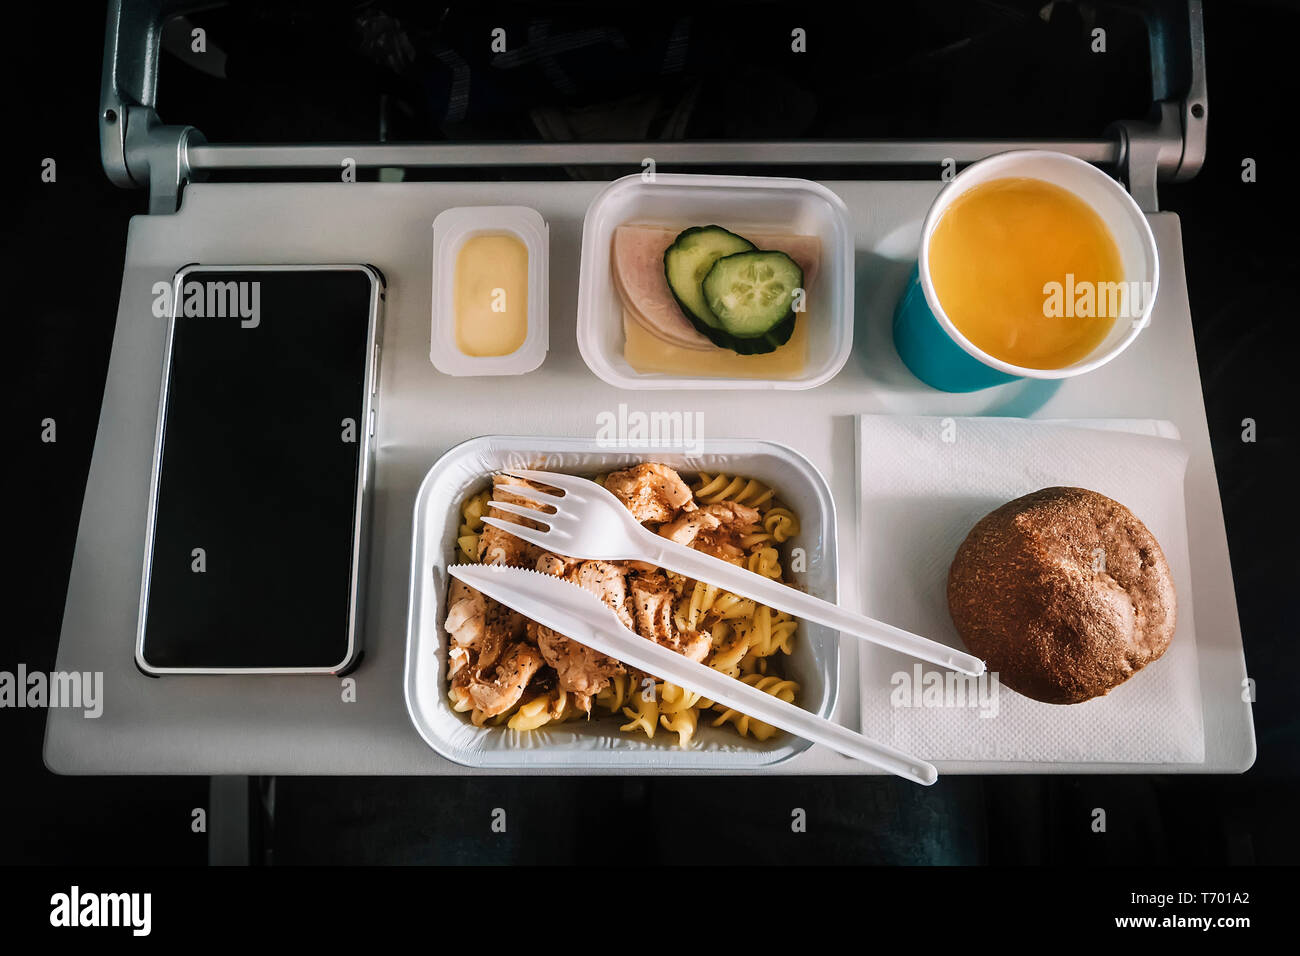 Mahlzeit per Flugzeug service Fach für Economy Class, Fleisch mit Nudeln,  Gewürze Obst, Salat, Gurke, ein Glas Saft und Butter. Selektive  konzentrieren Stockfotografie - Alamy